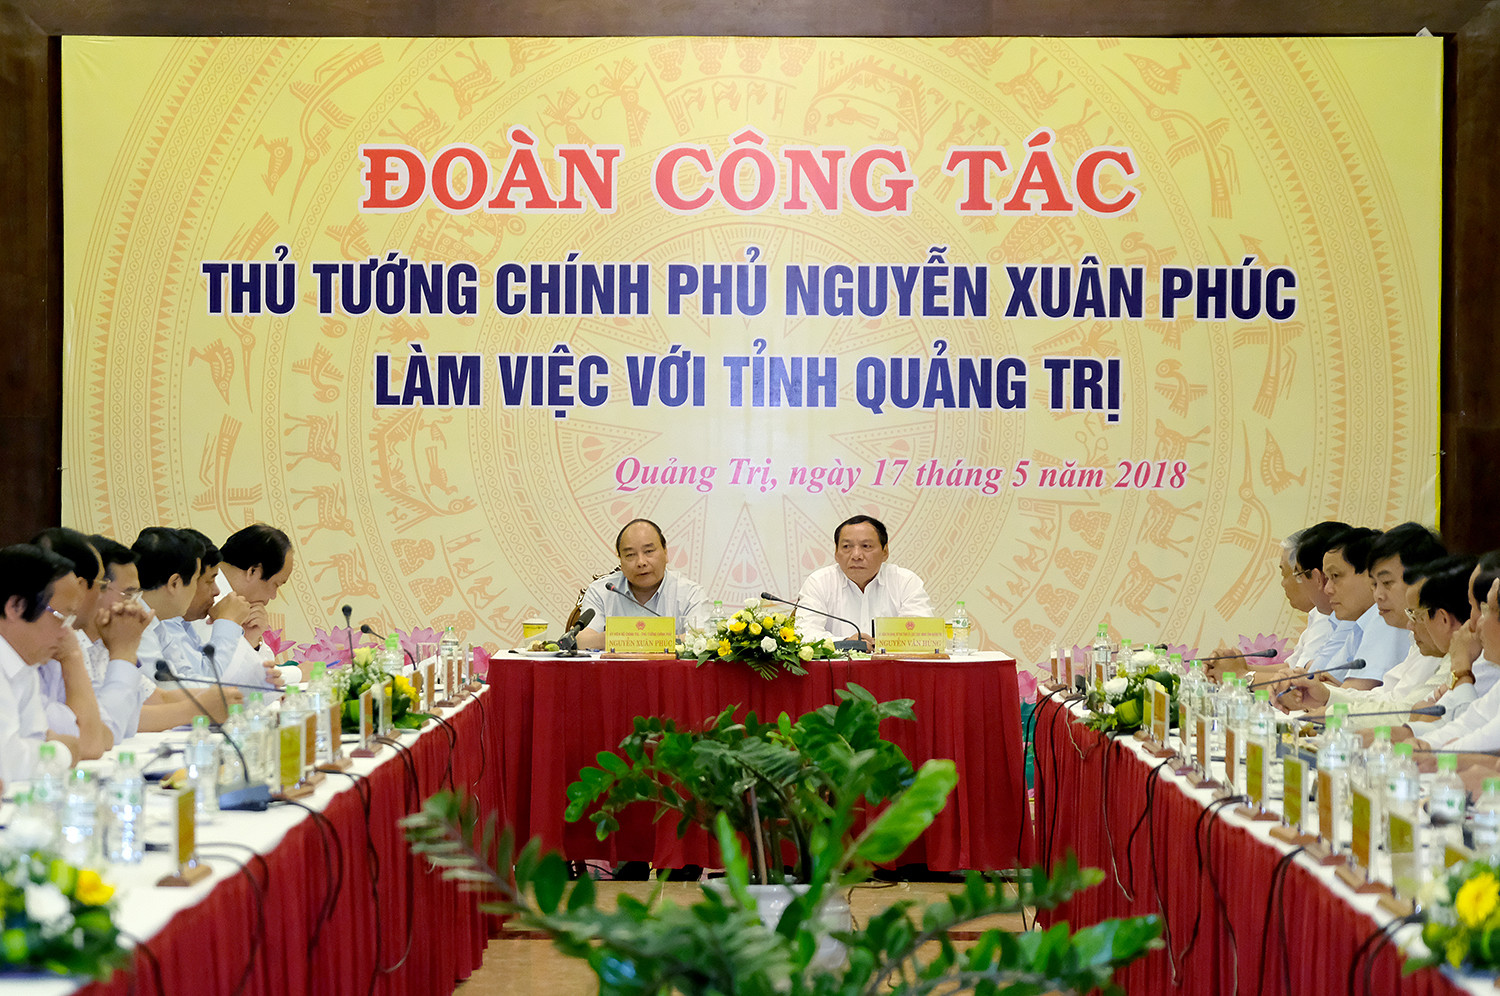 Thủ tướng Chính phủ Nguyễn Xuân Phúc làm việc với tỉnh Quảng Trị